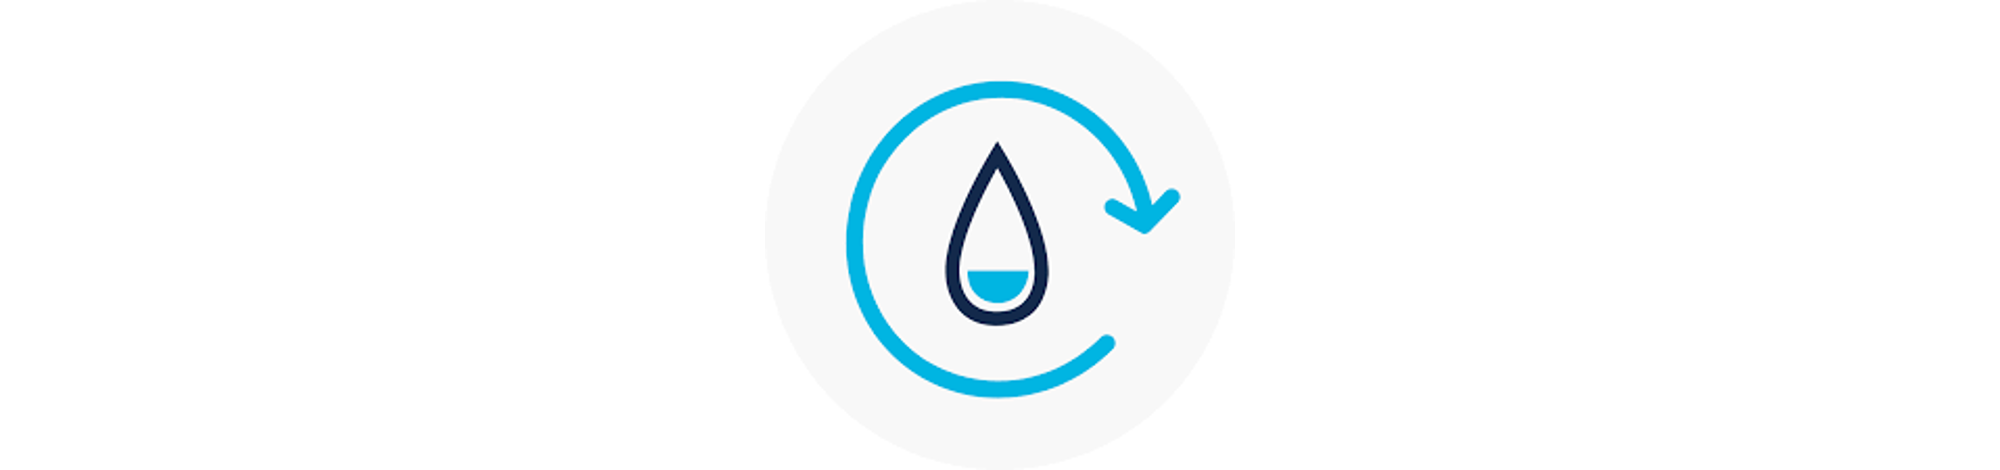 Empresa Sustentável: Uso Consciente da Água